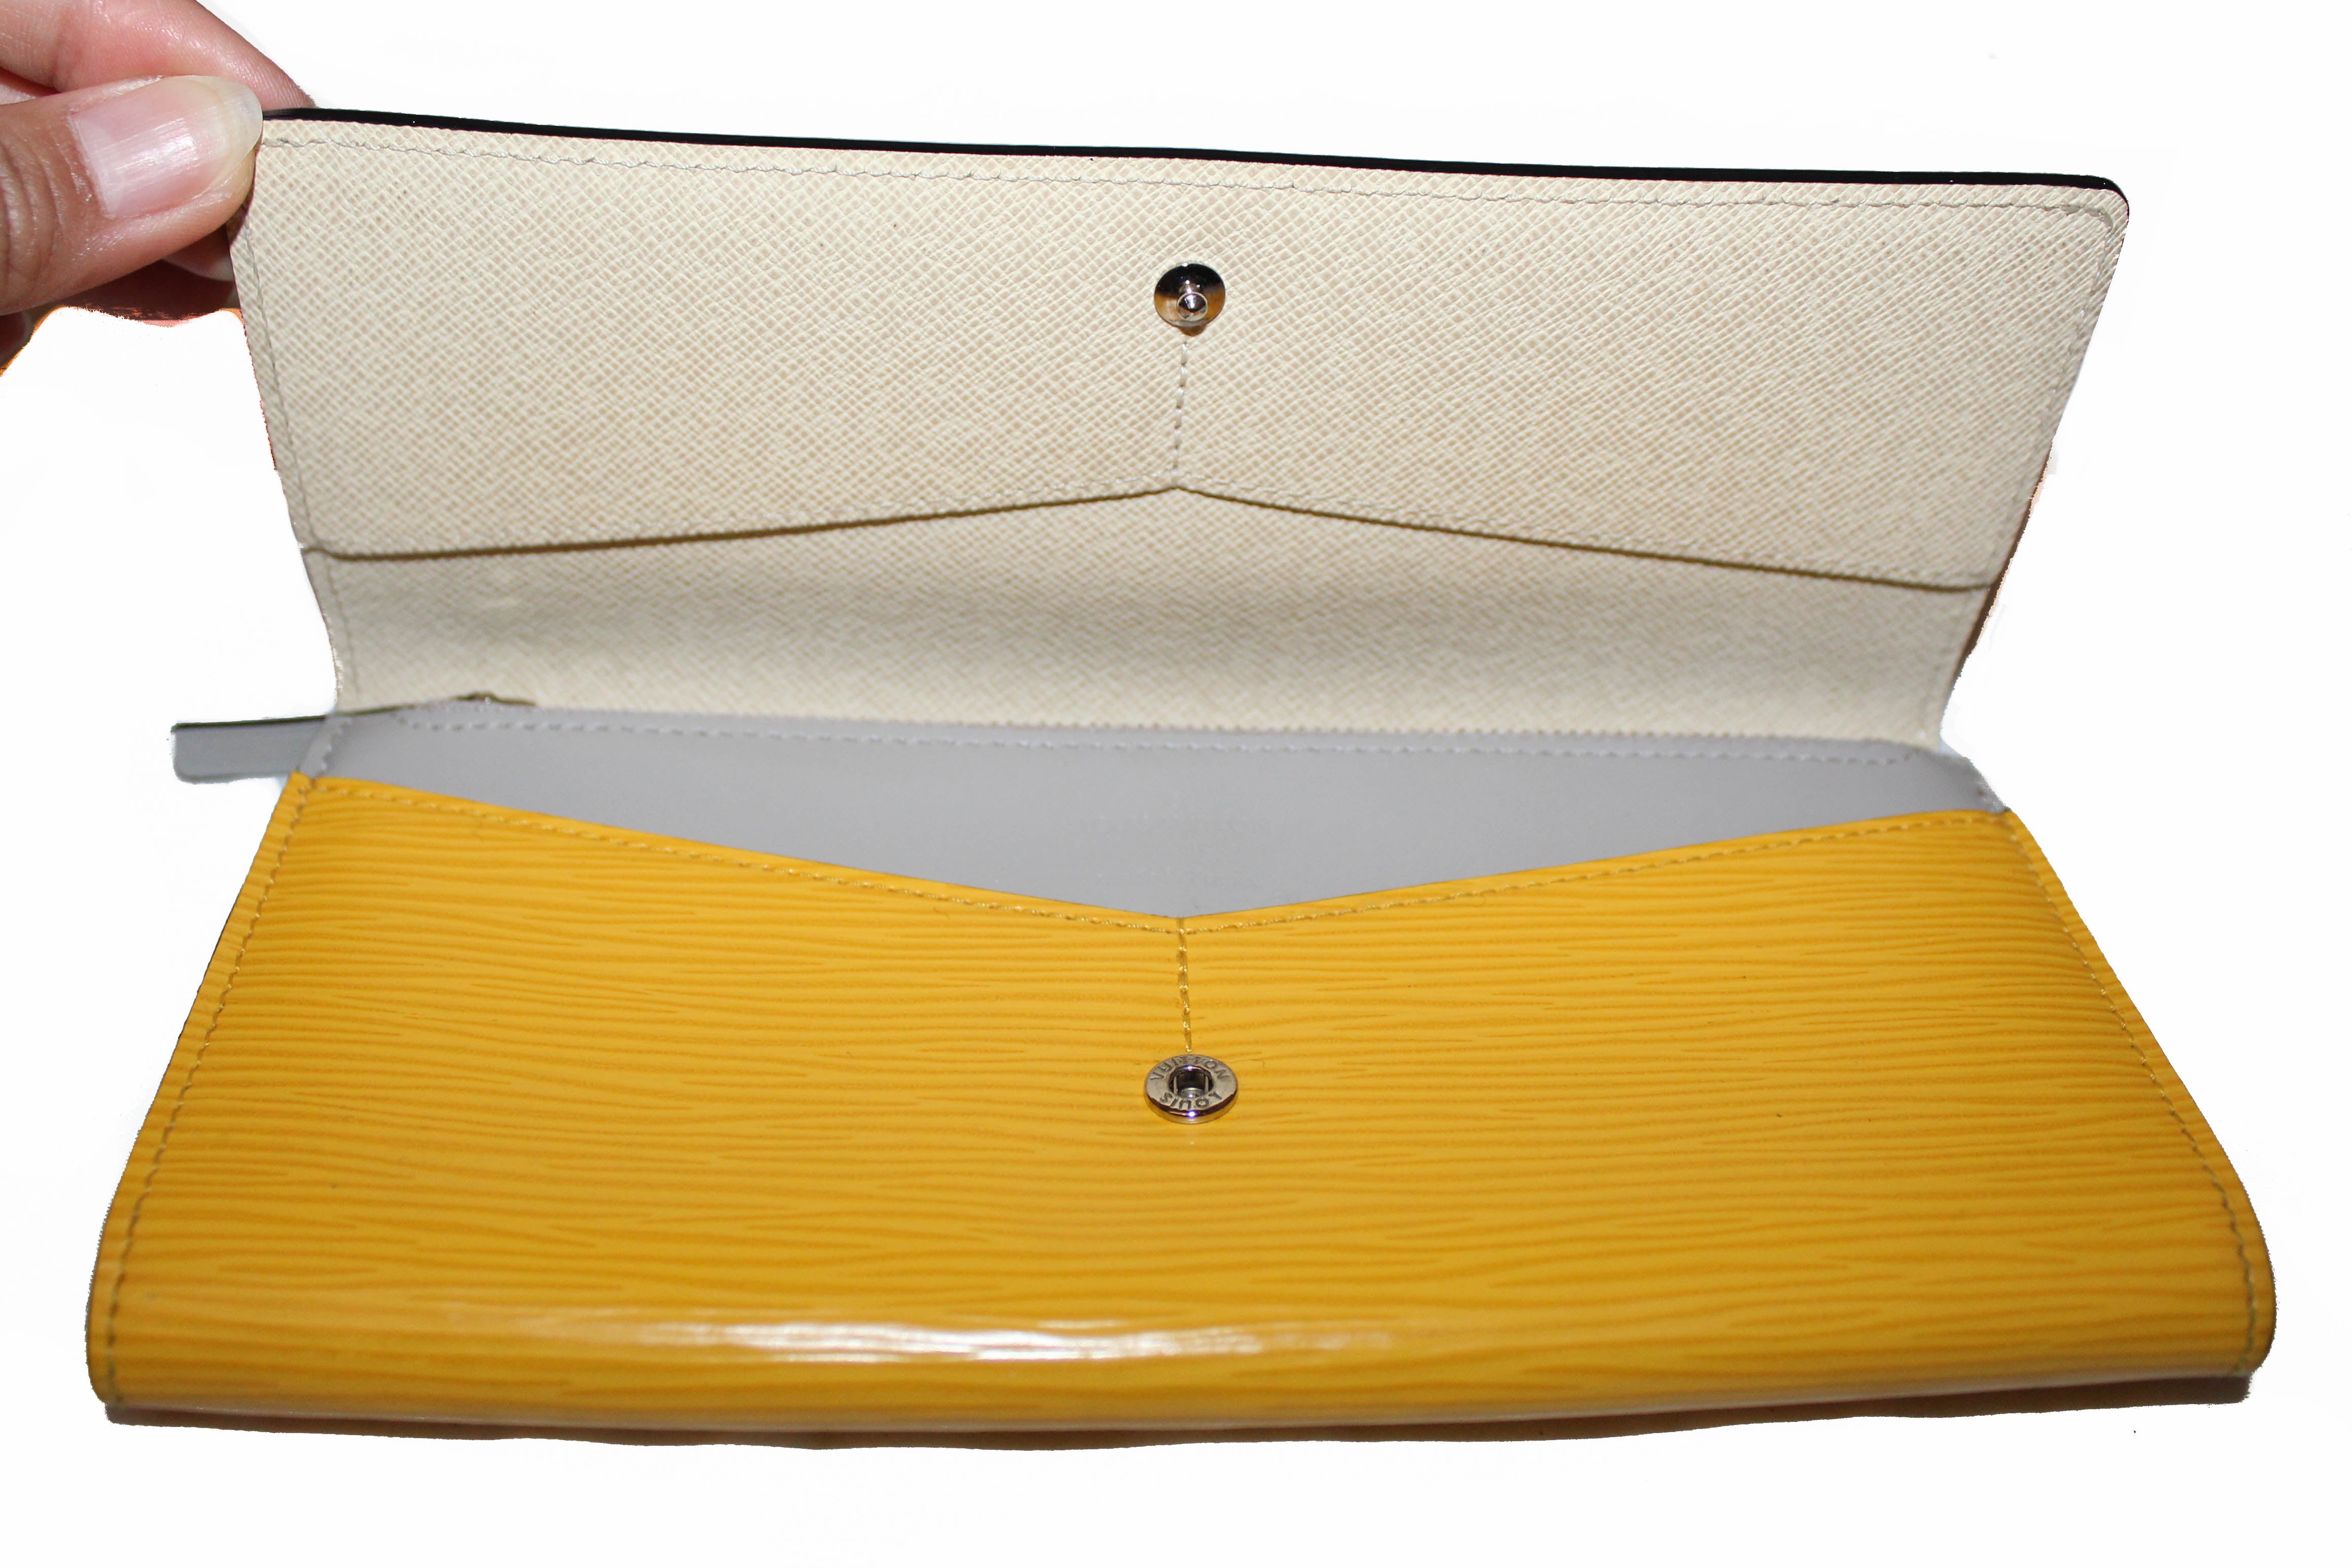 Authentic Louis Vuitton White/Yellow Epi Flore Leather Long Flap Wallet